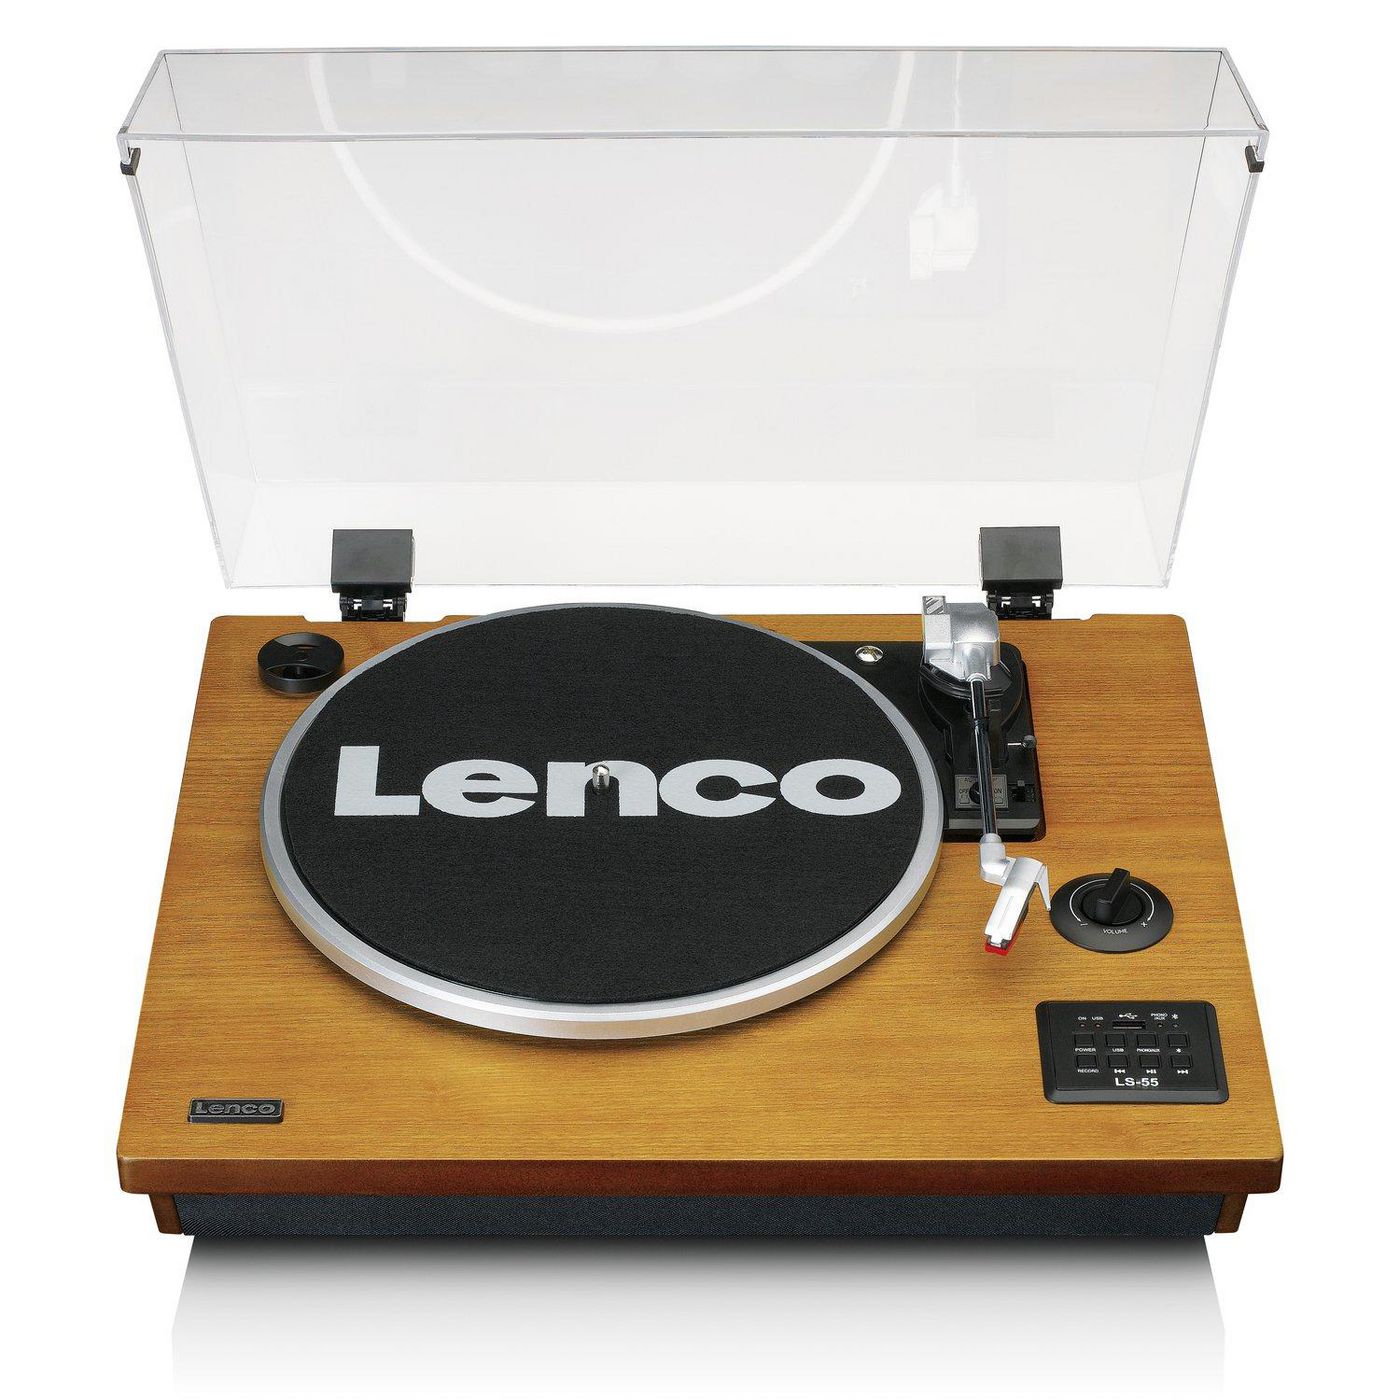 LENCO LS-55 - Plattenspieler - 2 x 5 Watt - Holz